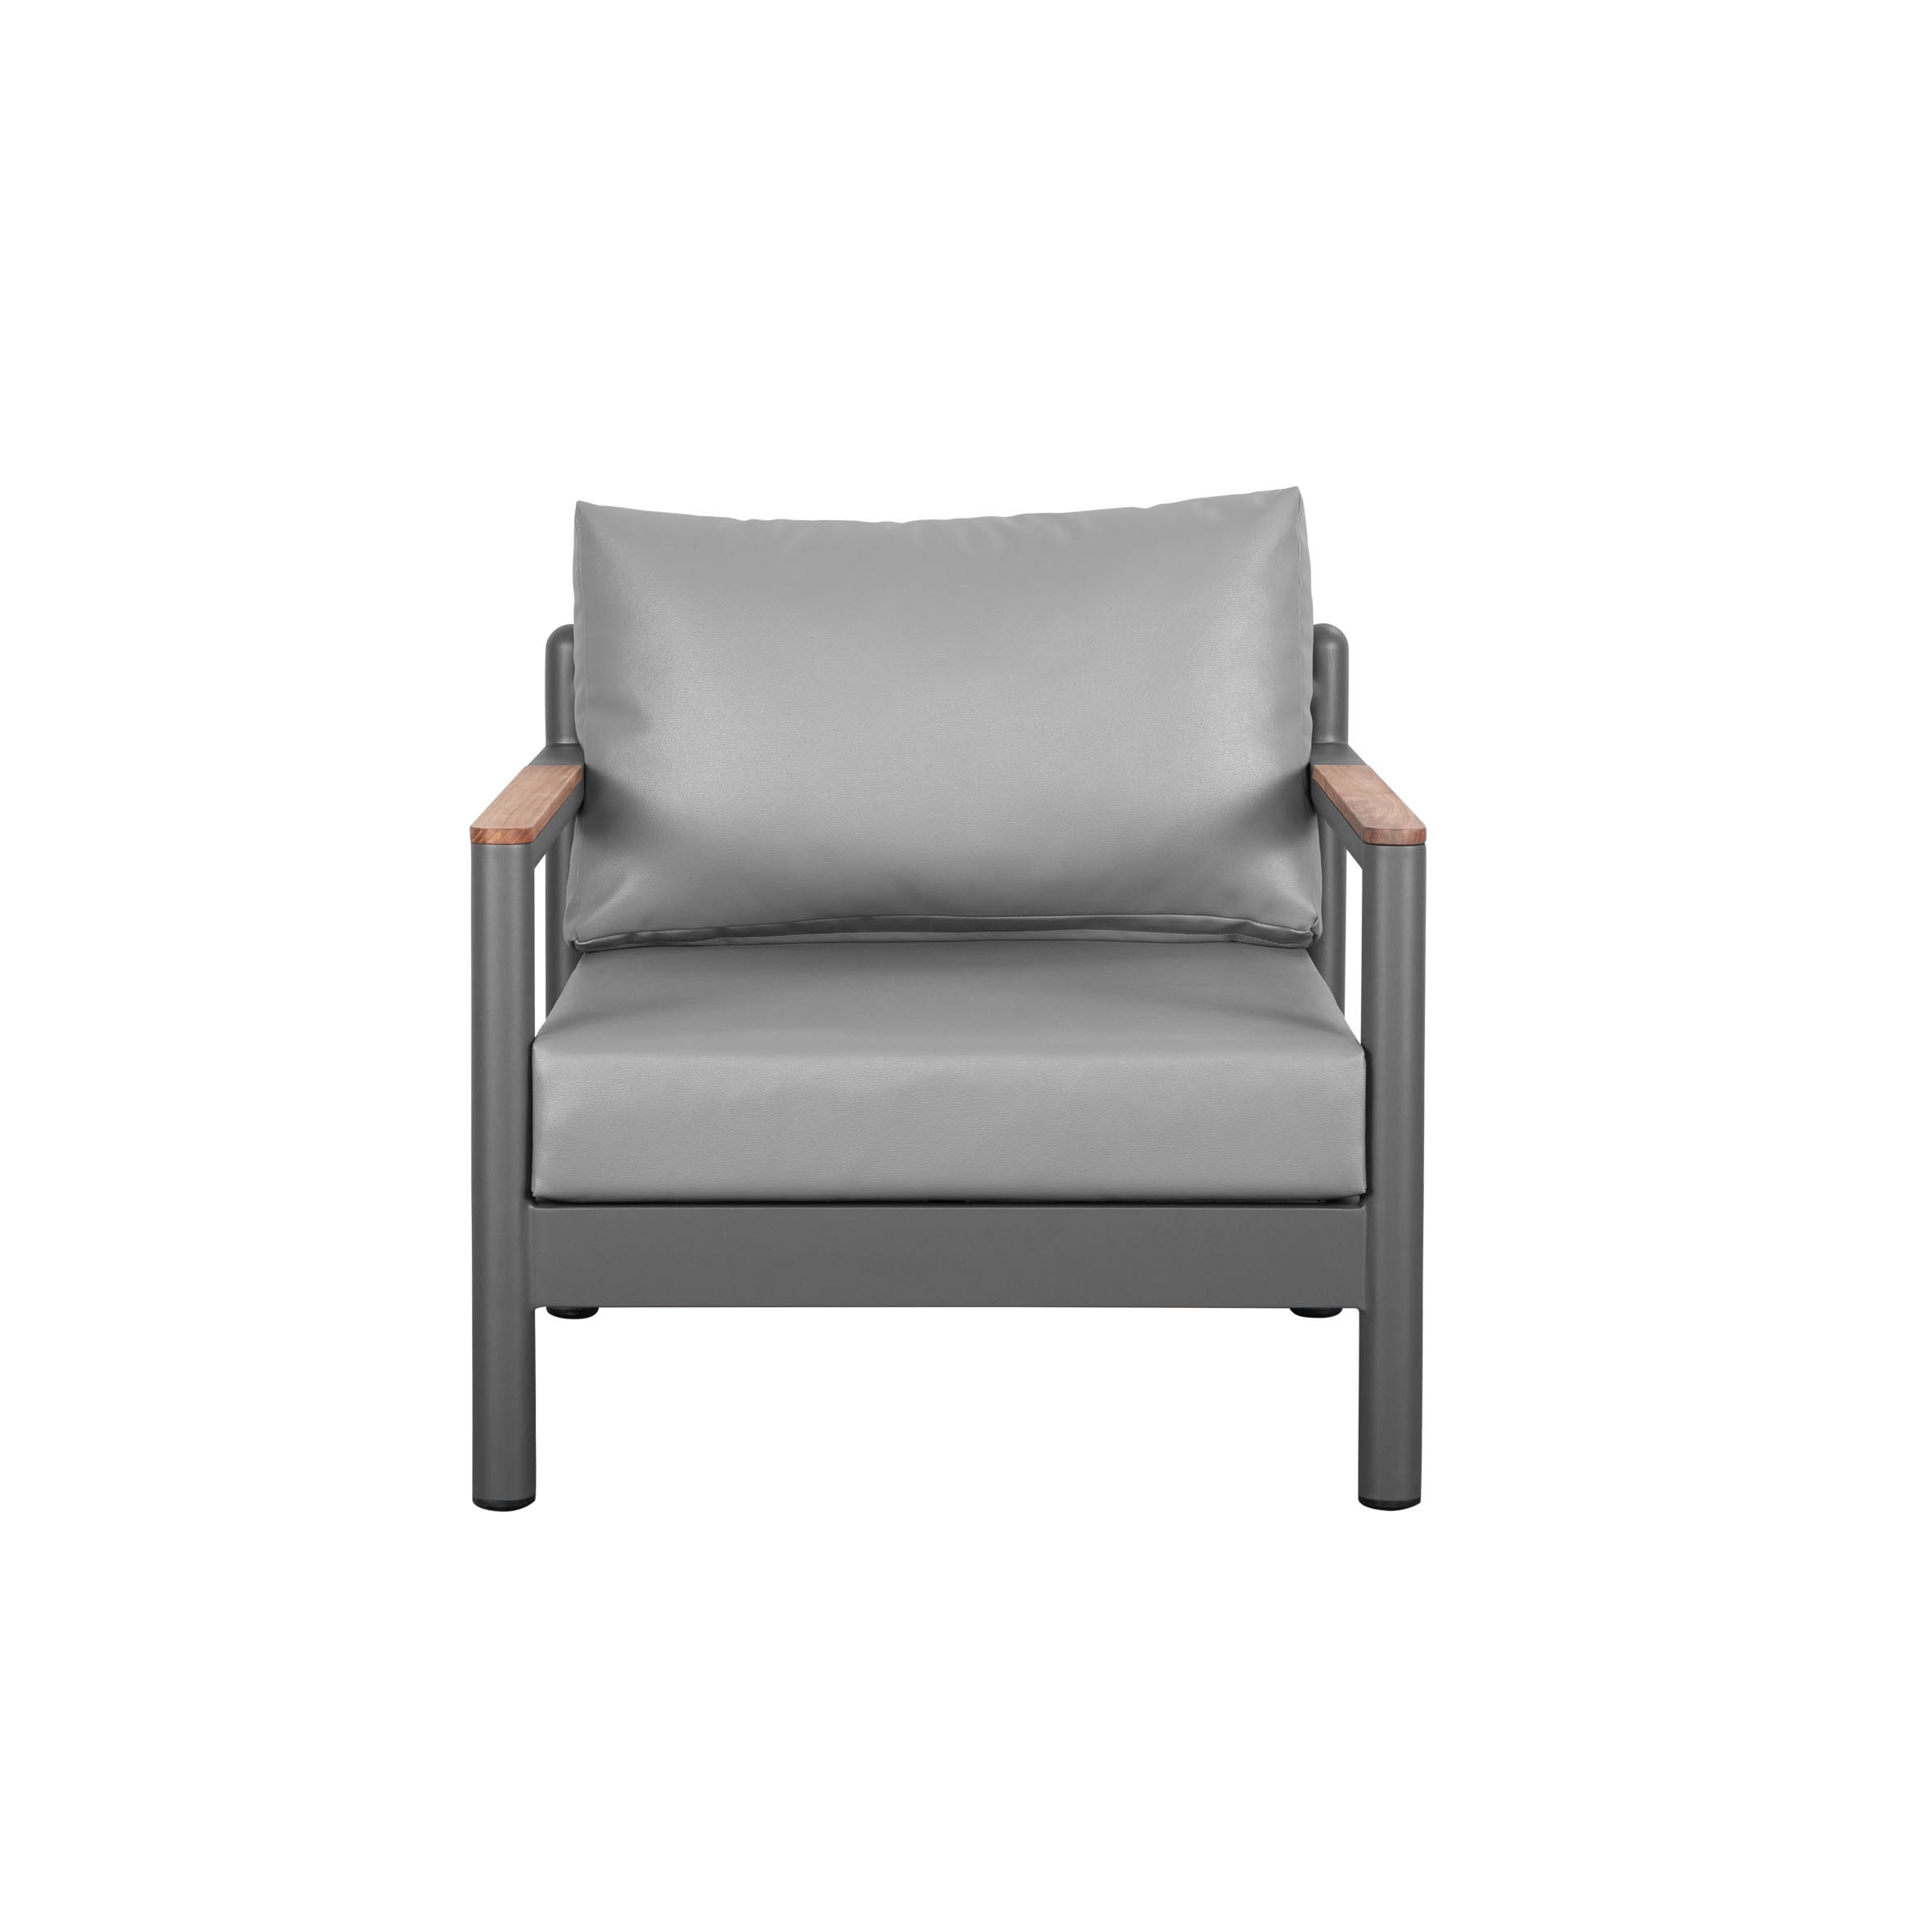 Armani single sofa S3